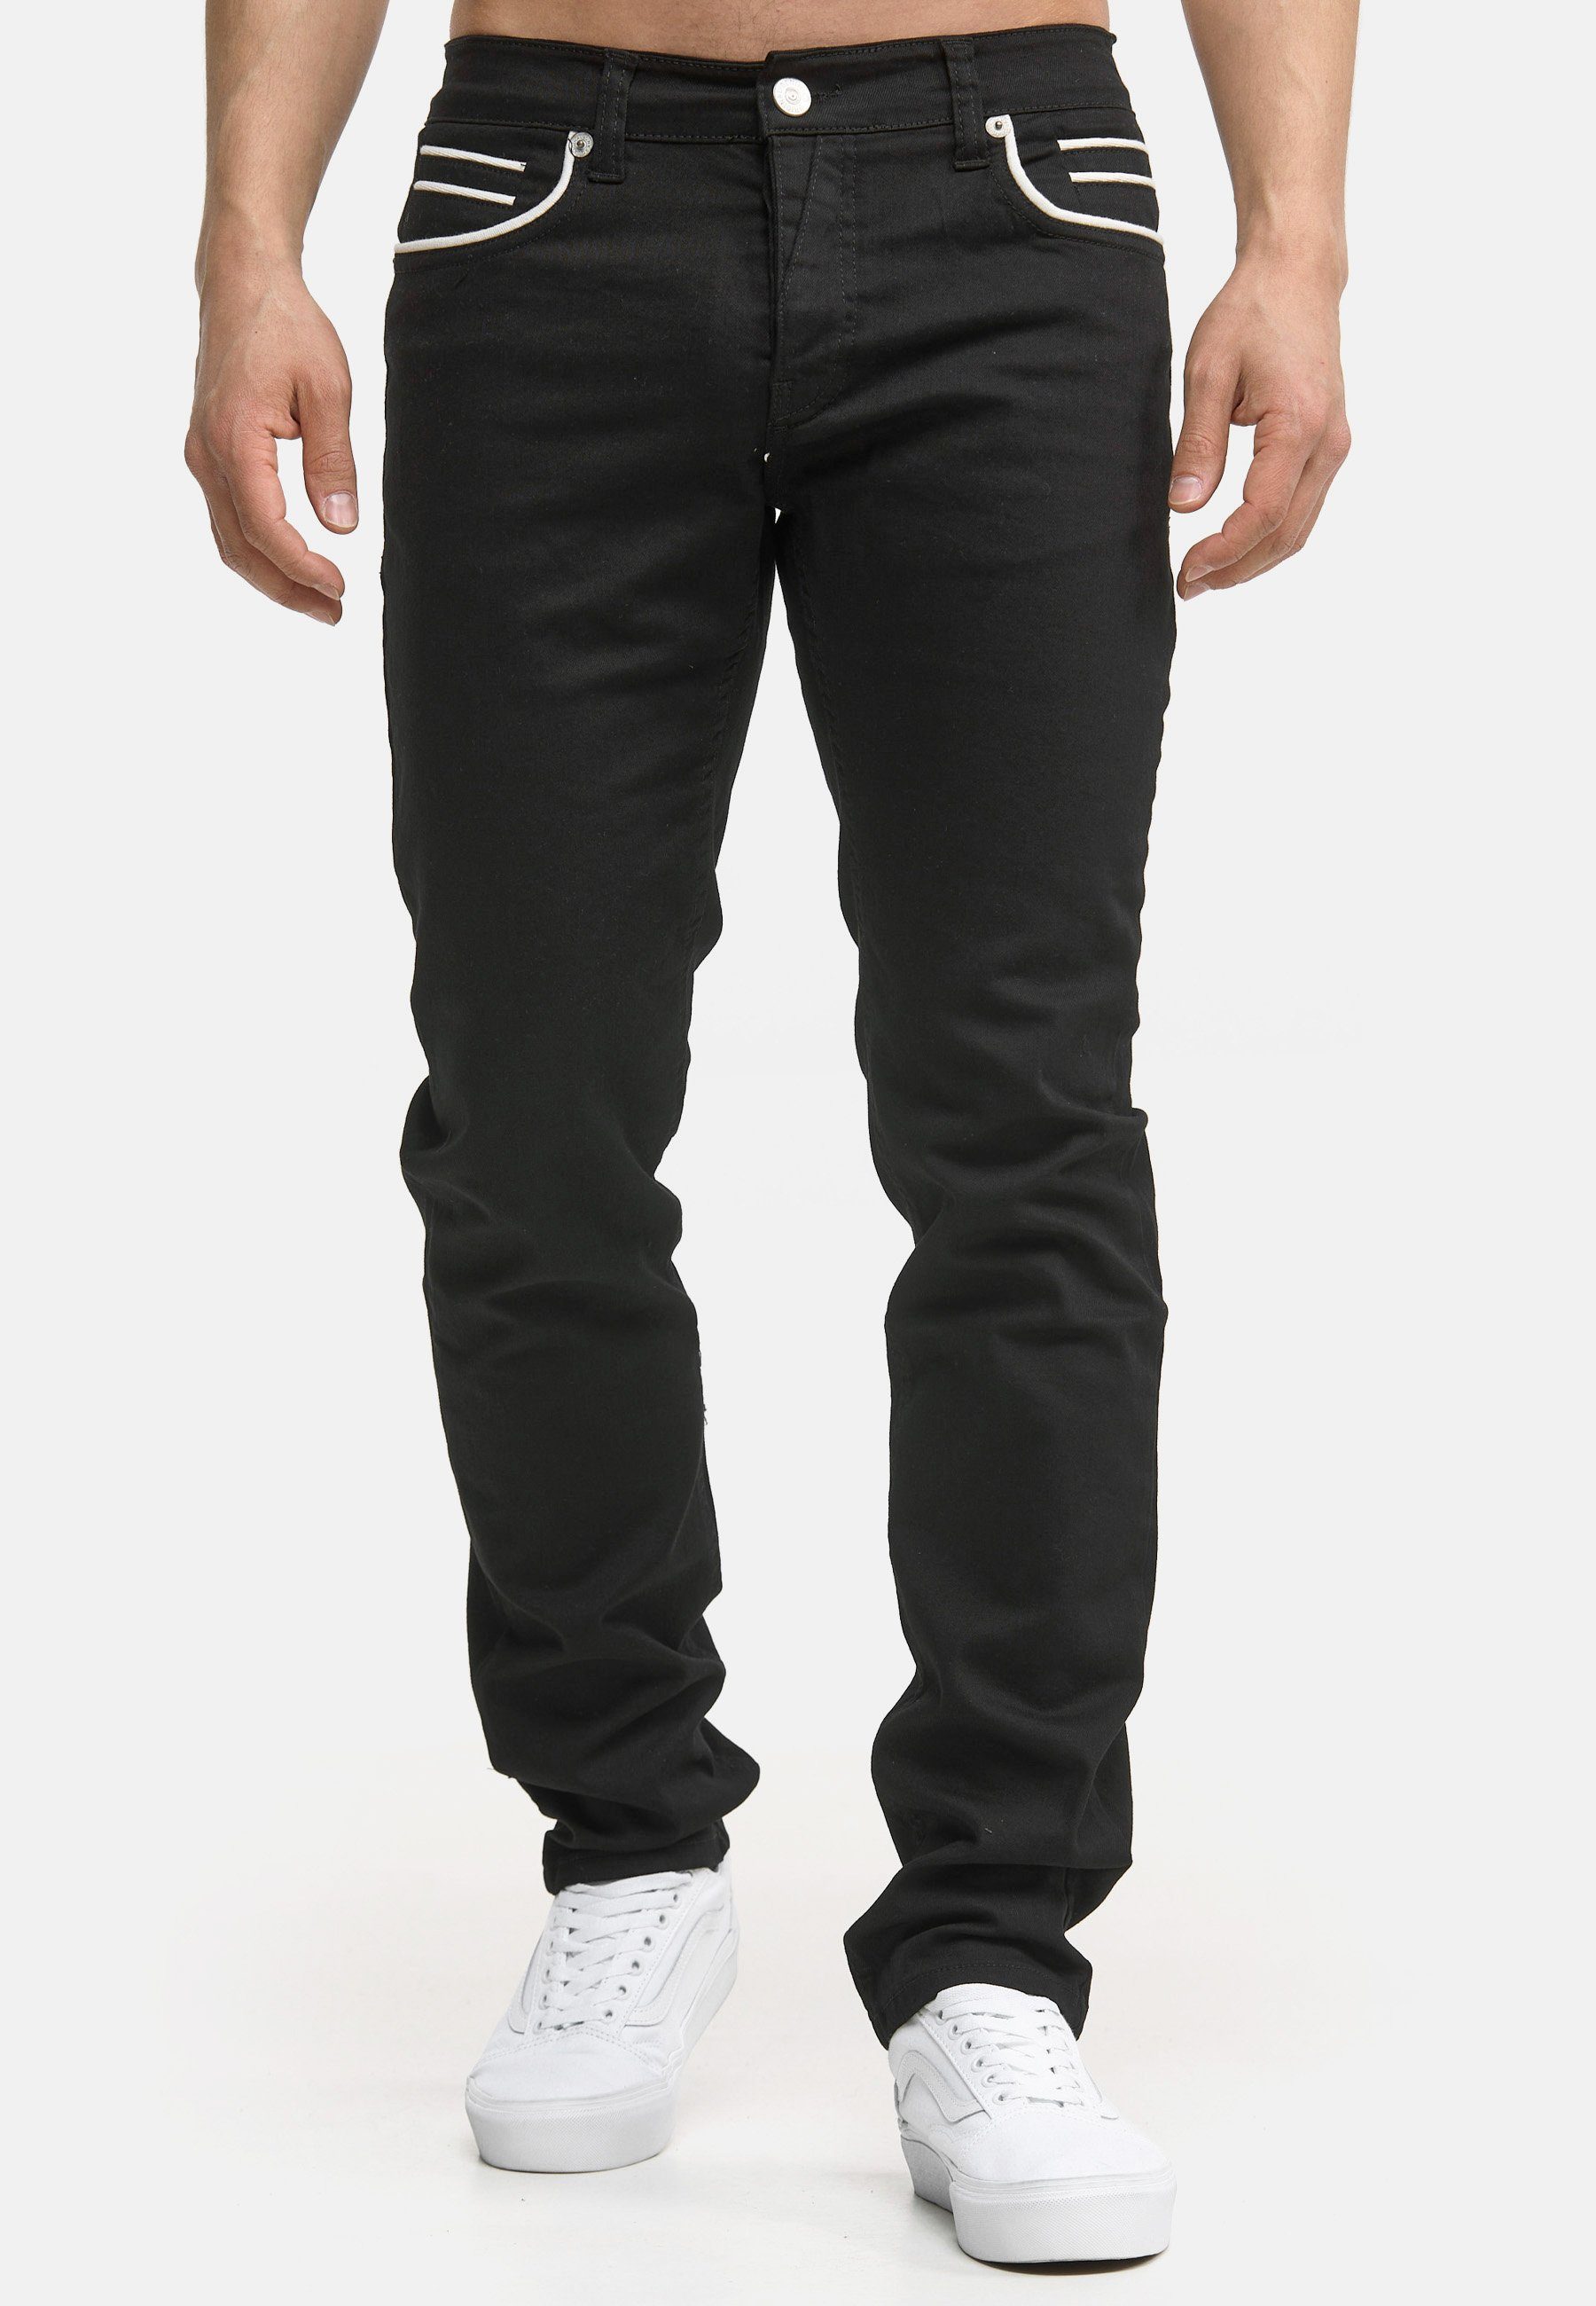 Jeans 3450 Black Code47 Regular-fit-Jeans Code47 Herren Modell